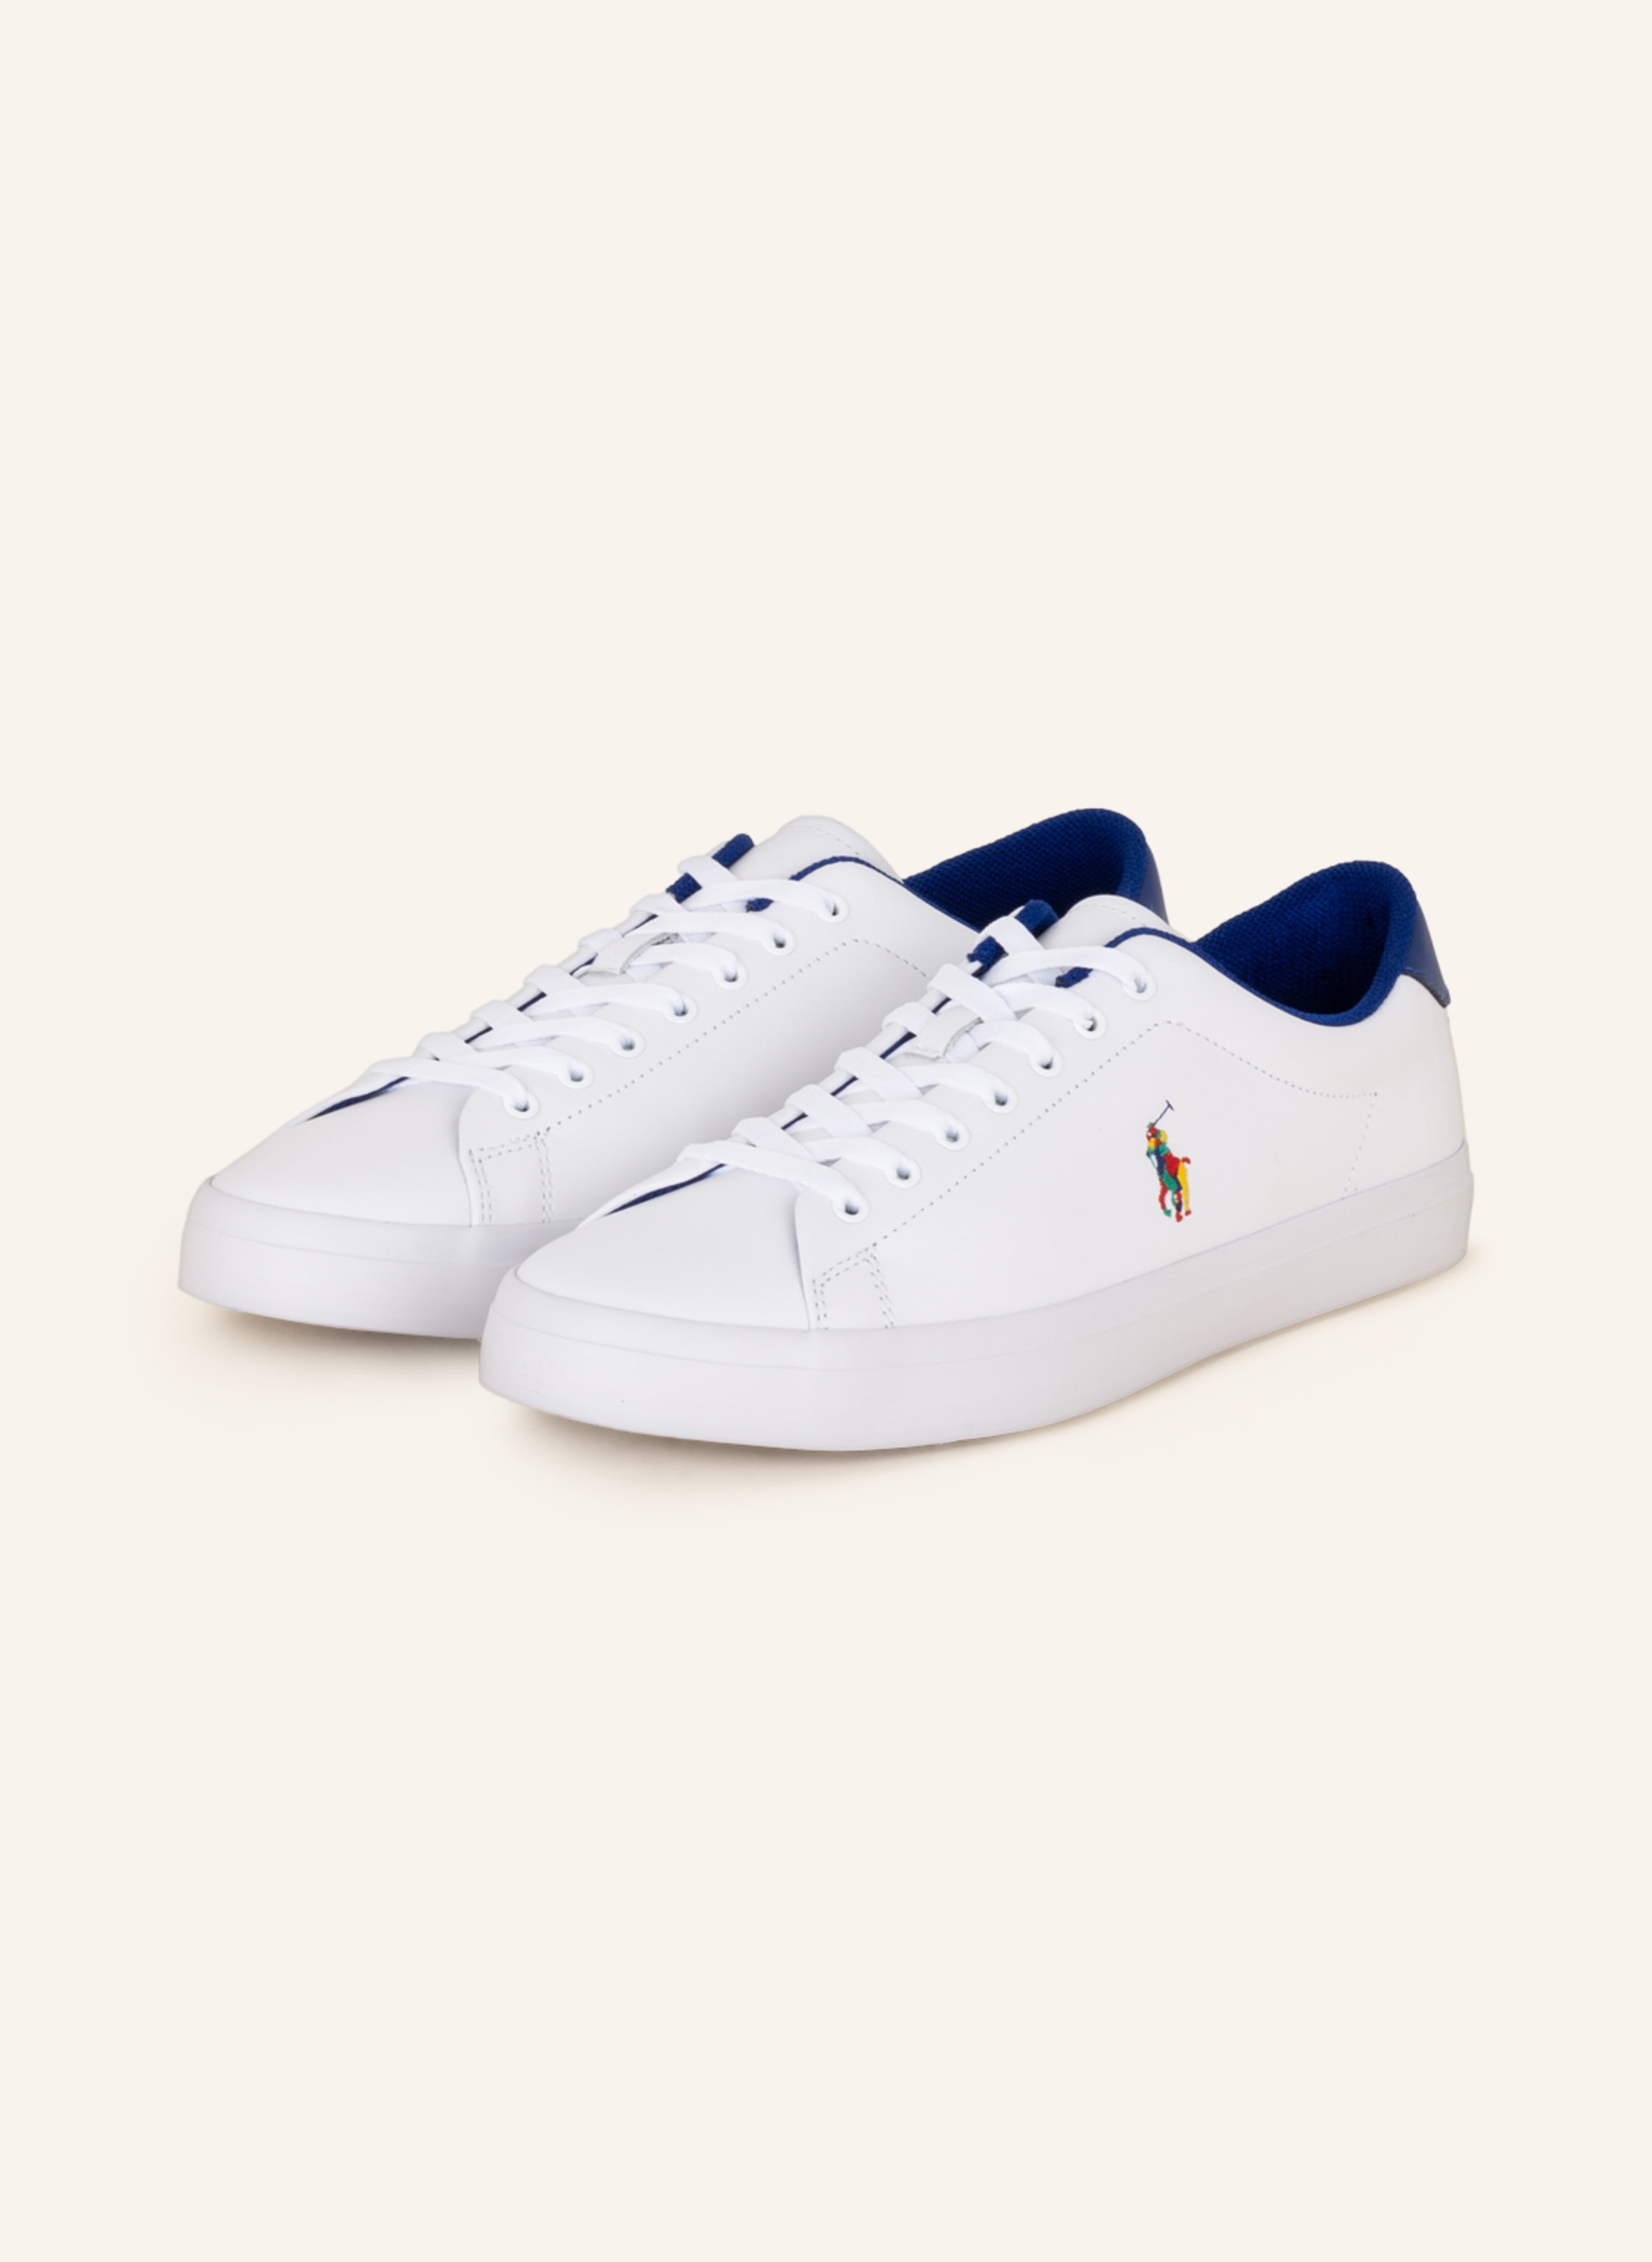 POLO RALPH LAUREN Sneakers LONGWOOD in white/ blue | Breuninger